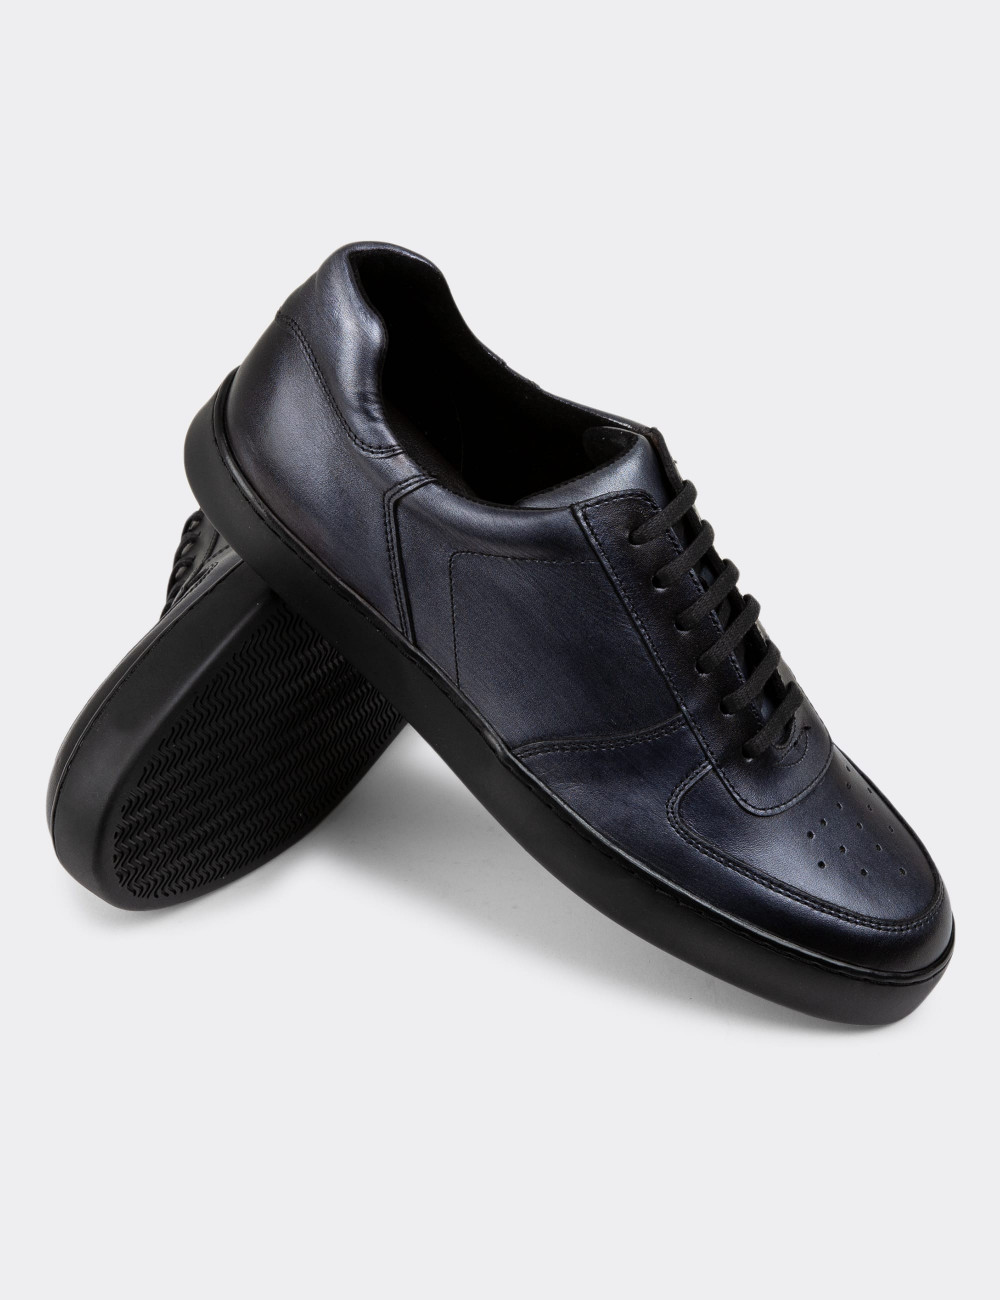 Hakiki Deri Antrasit Sneaker Erkek Ayakkabı - 01880MANTC01